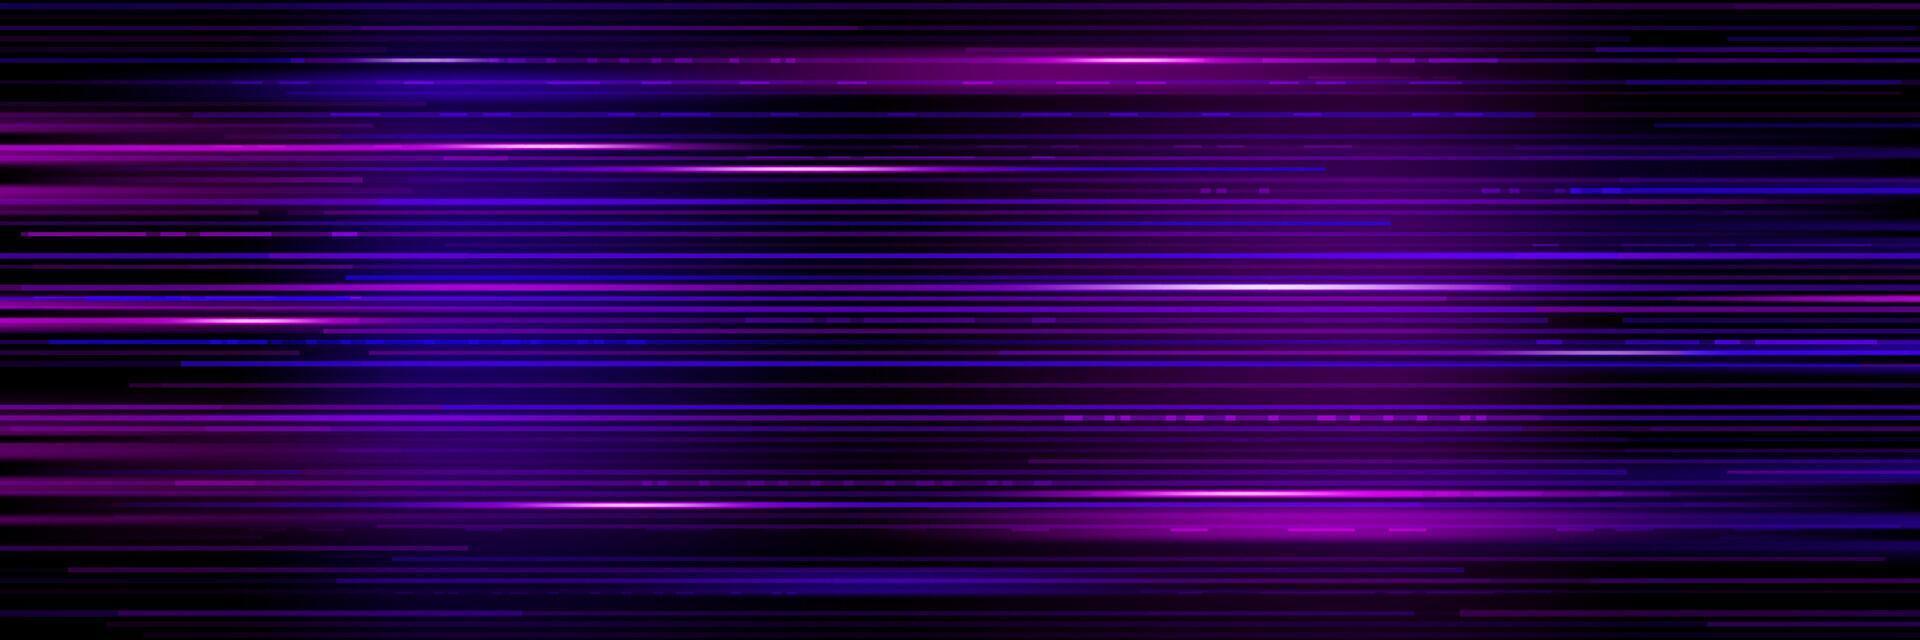 Digital game glitch purple background, TV screen vector